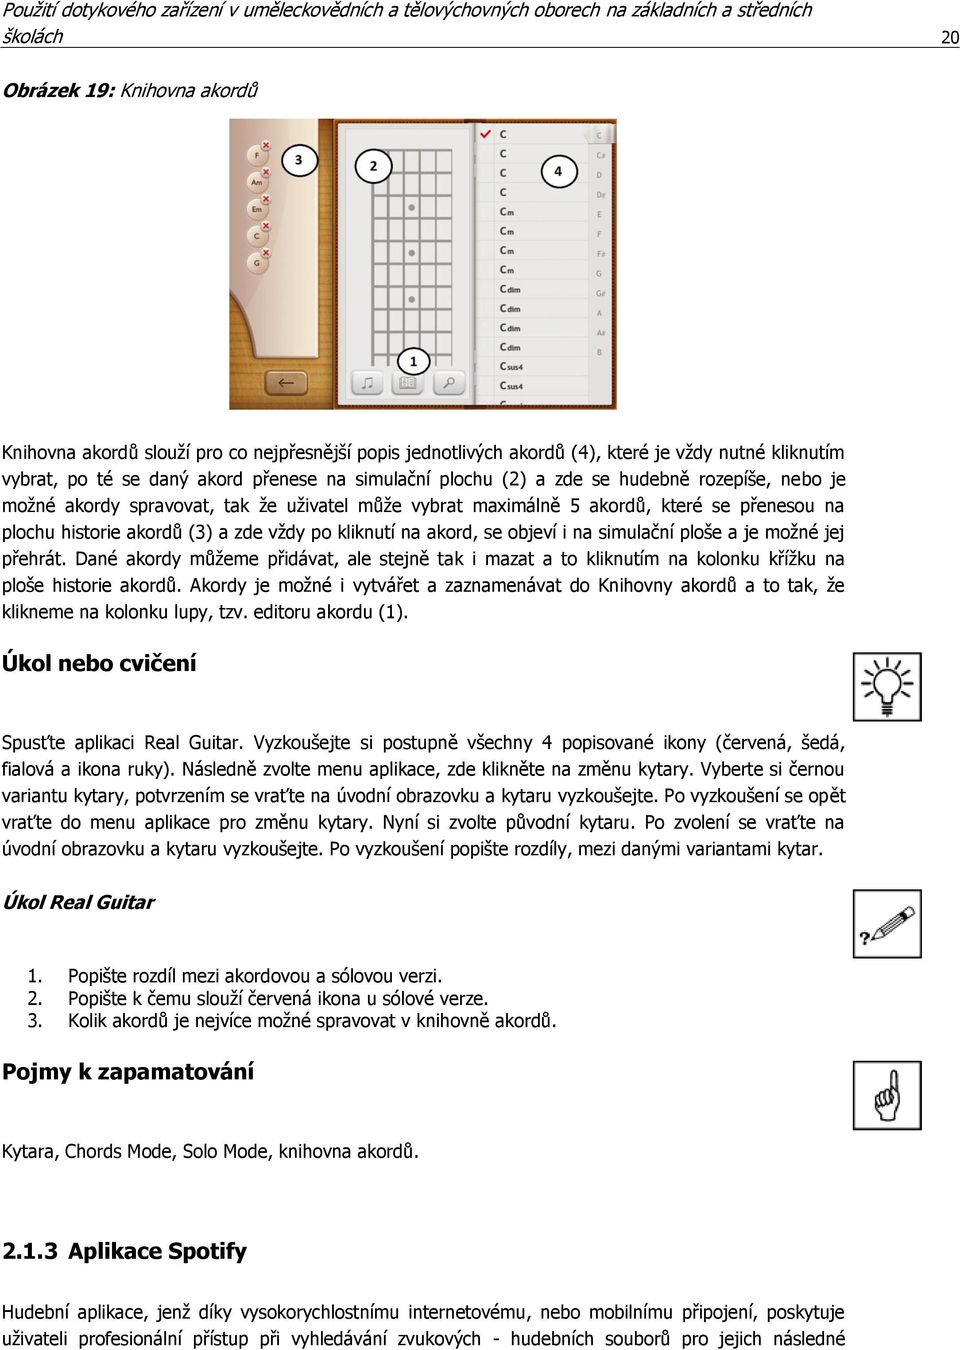 Univerzita Palackého v Olomouci. Použití dotykového zařízení v  uměleckovědních a tělovýchovných oborech na základních a středních školách  - PDF Free Download